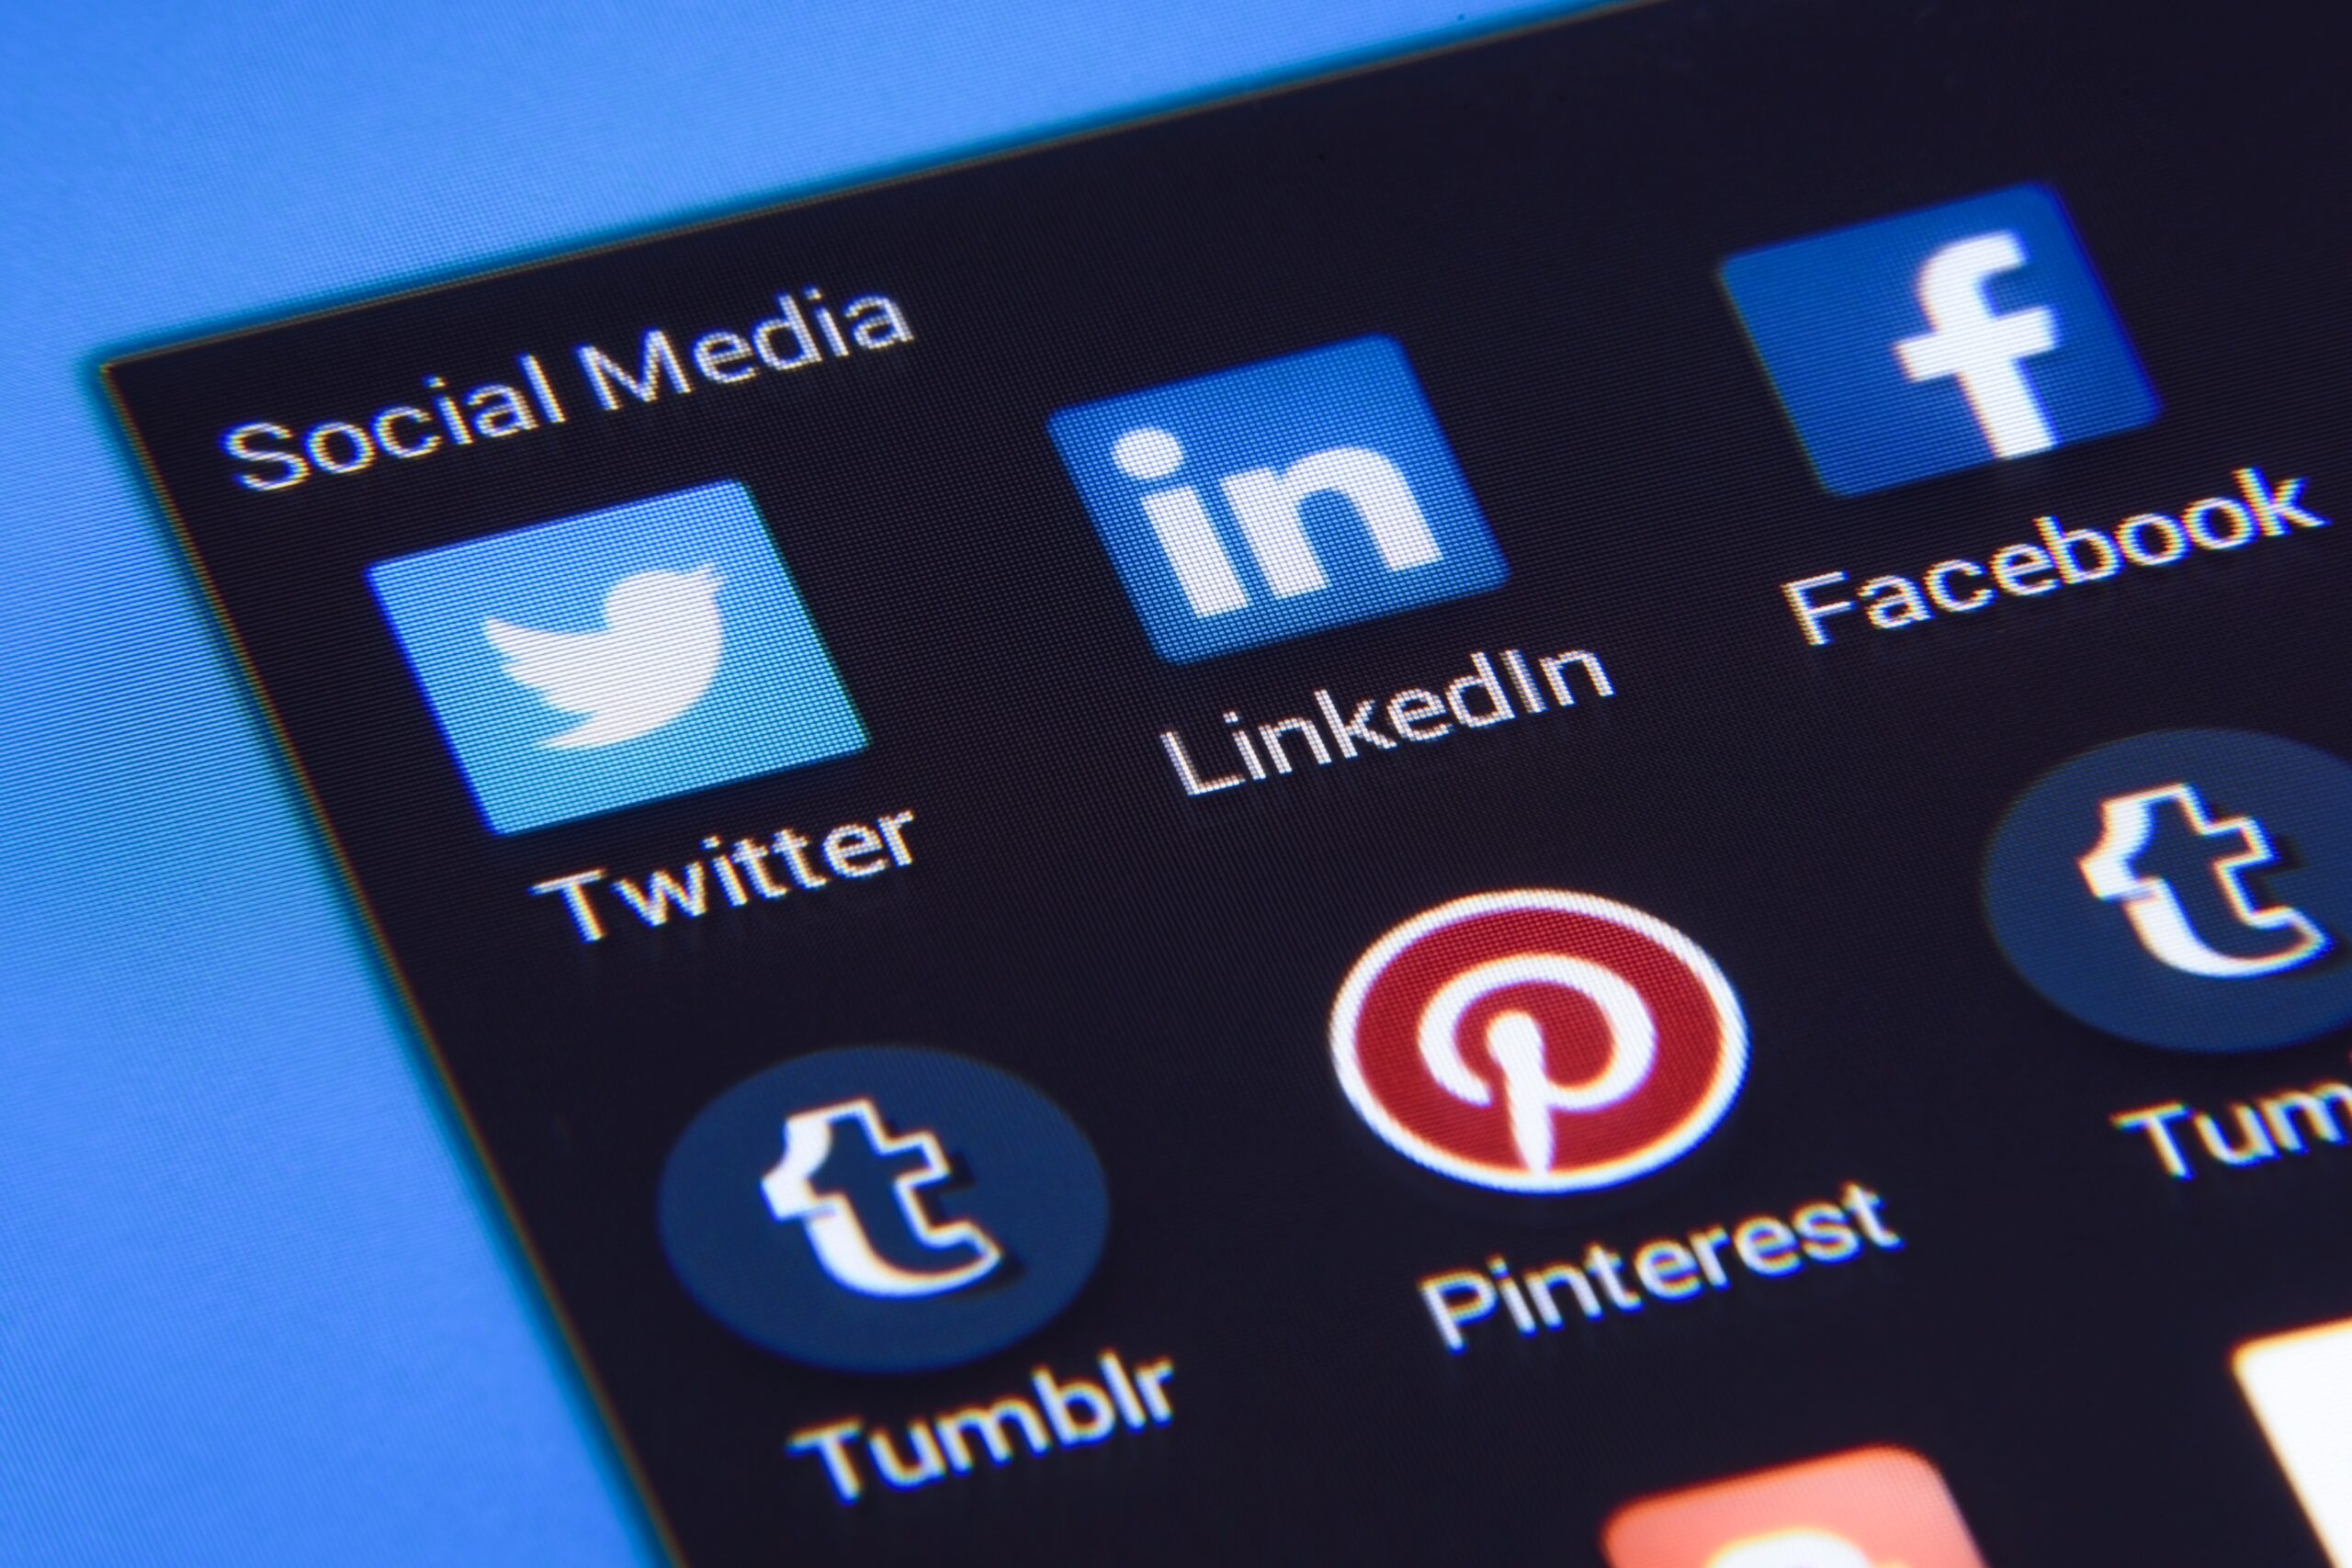 LinkedIn acredita que tem a solução para suas redes sociais: Eliminar conteúdo político